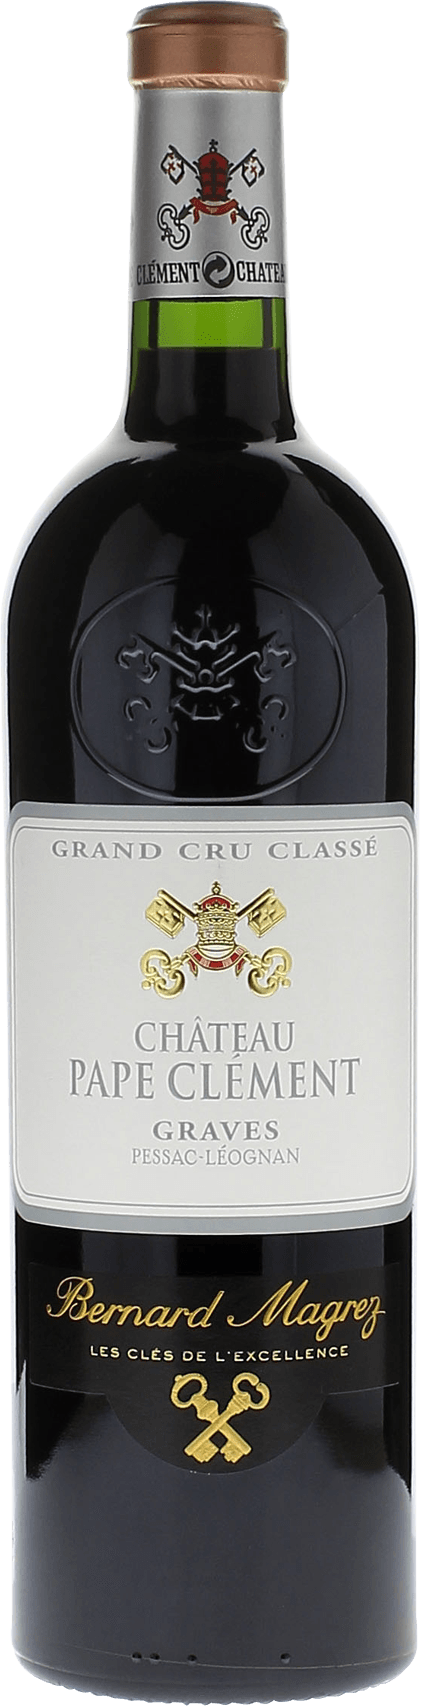 Pape clement rouge 2017 Grand Cru Class Graves, Bordeaux rouge